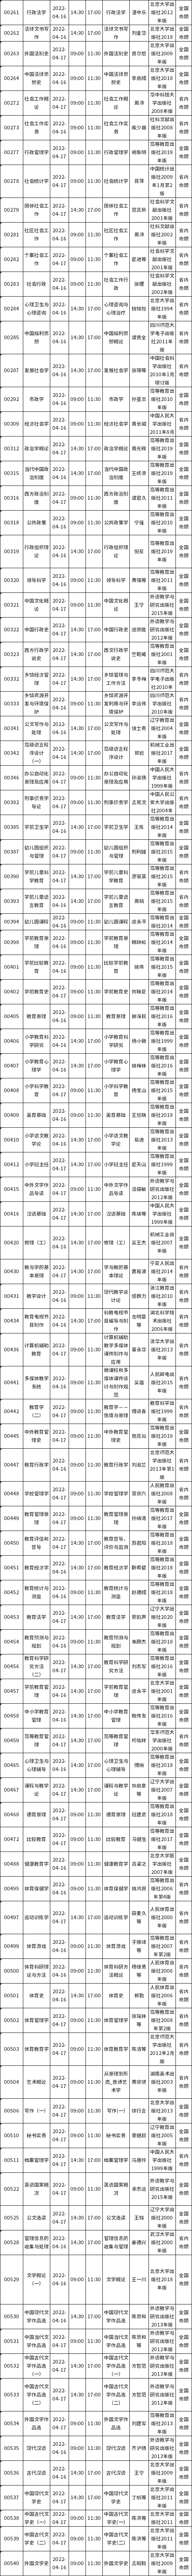 四川省2022年4月自考考试课程简表